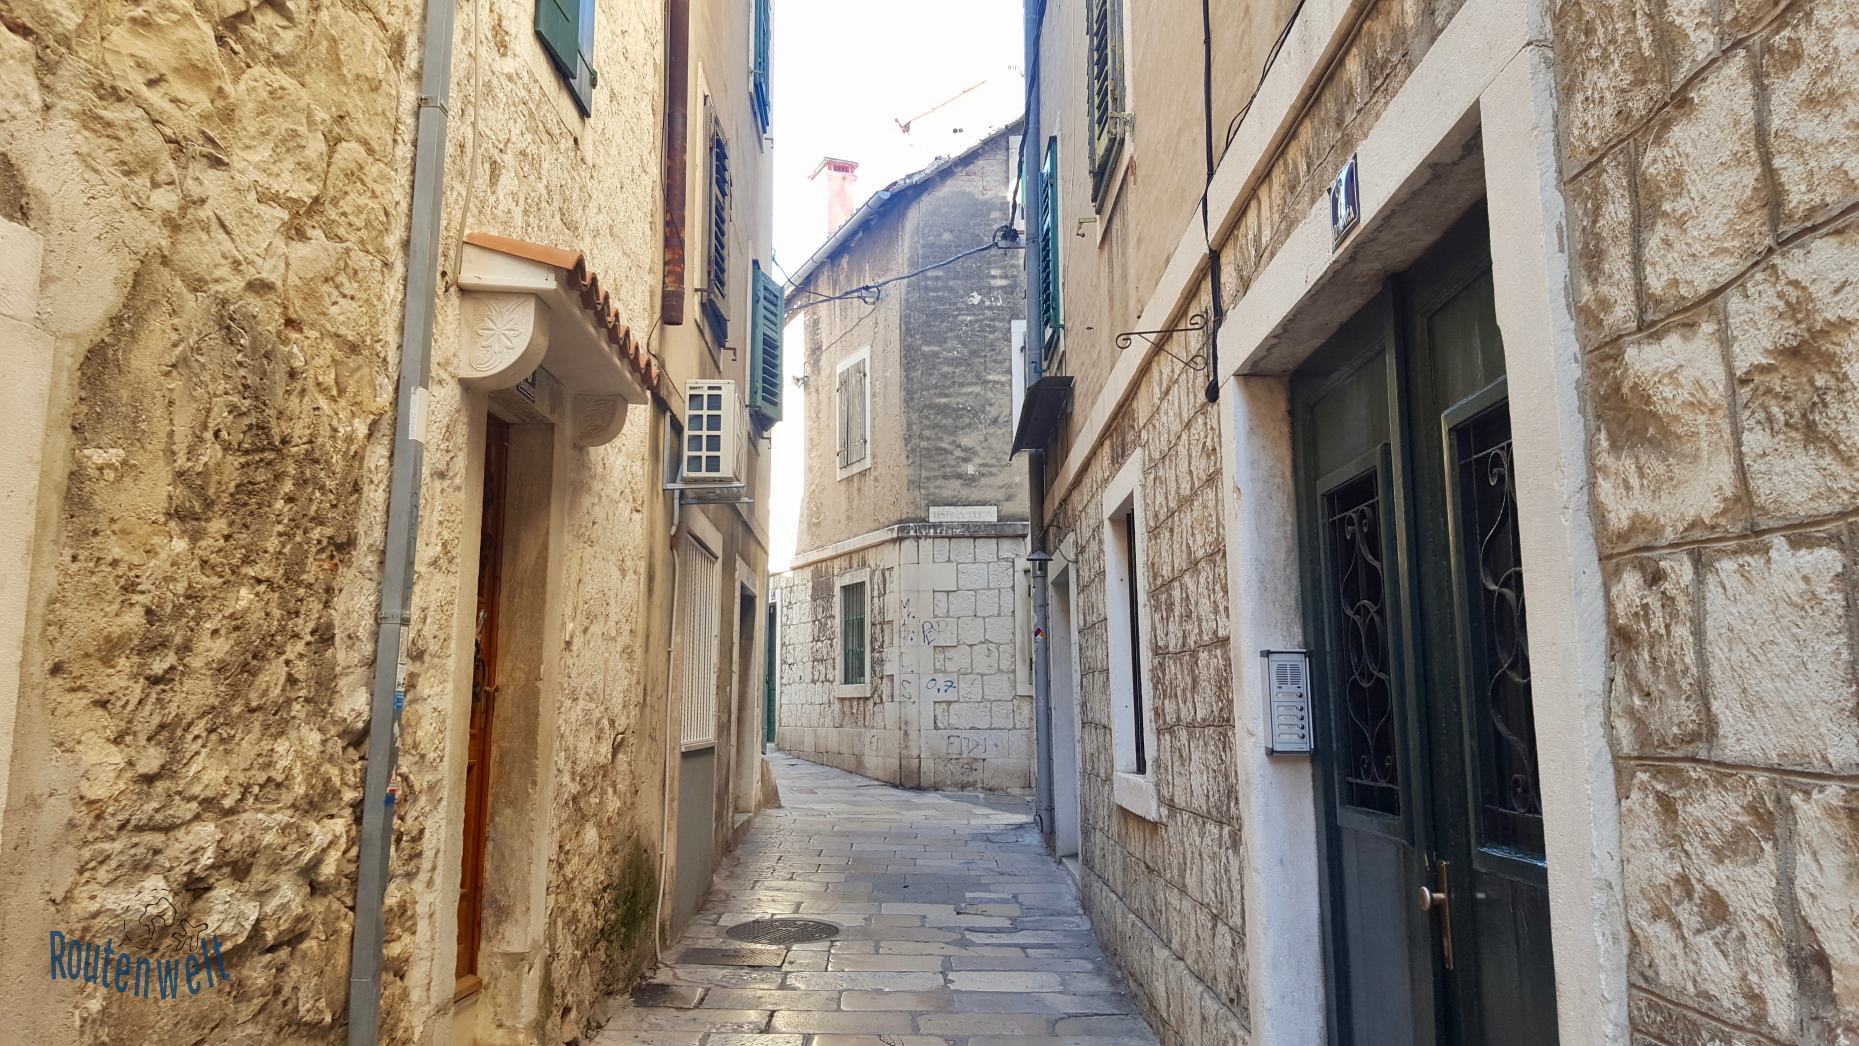 Gassen in der Altstadt von Split